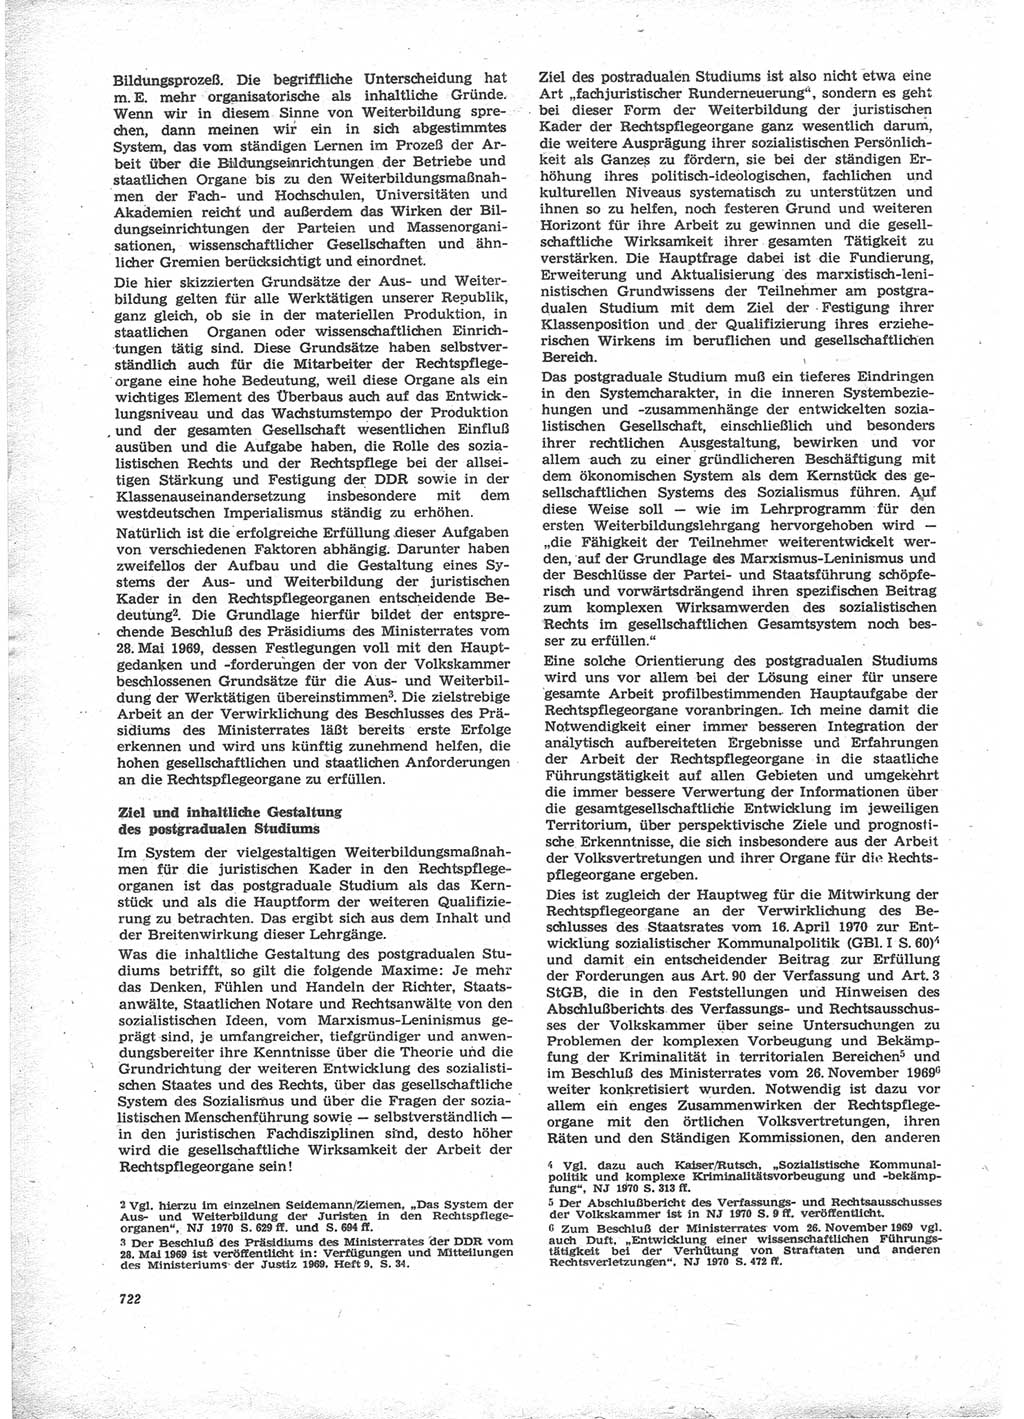 Neue Justiz (NJ), Zeitschrift für Recht und Rechtswissenschaft [Deutsche Demokratische Republik (DDR)], 24. Jahrgang 1970, Seite 722 (NJ DDR 1970, S. 722)